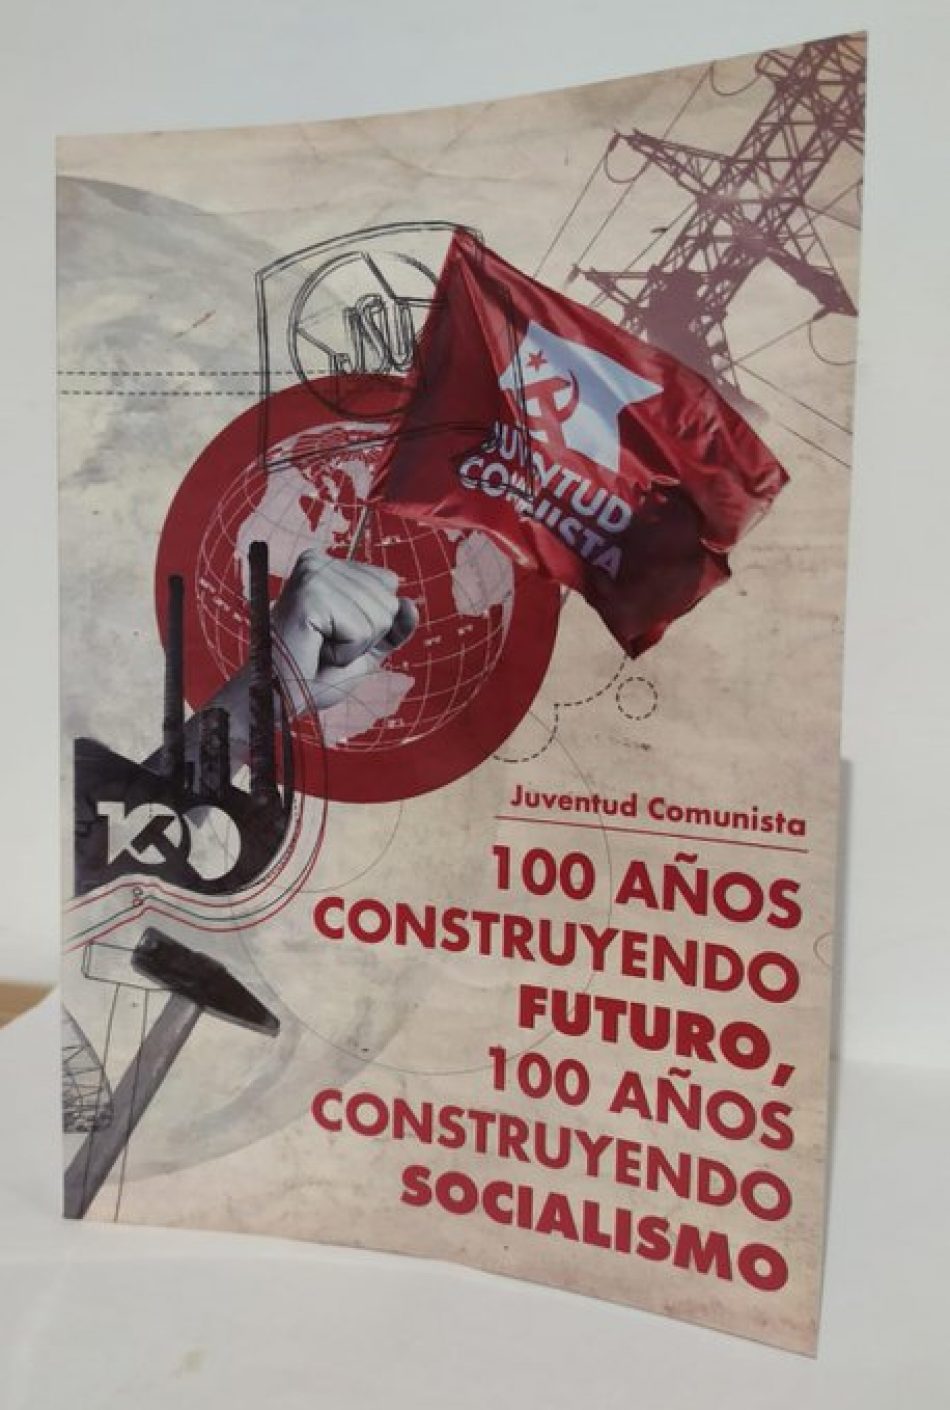 Presentación del libro “100 años construyendo futuro, 100 años construyendo socialismo”